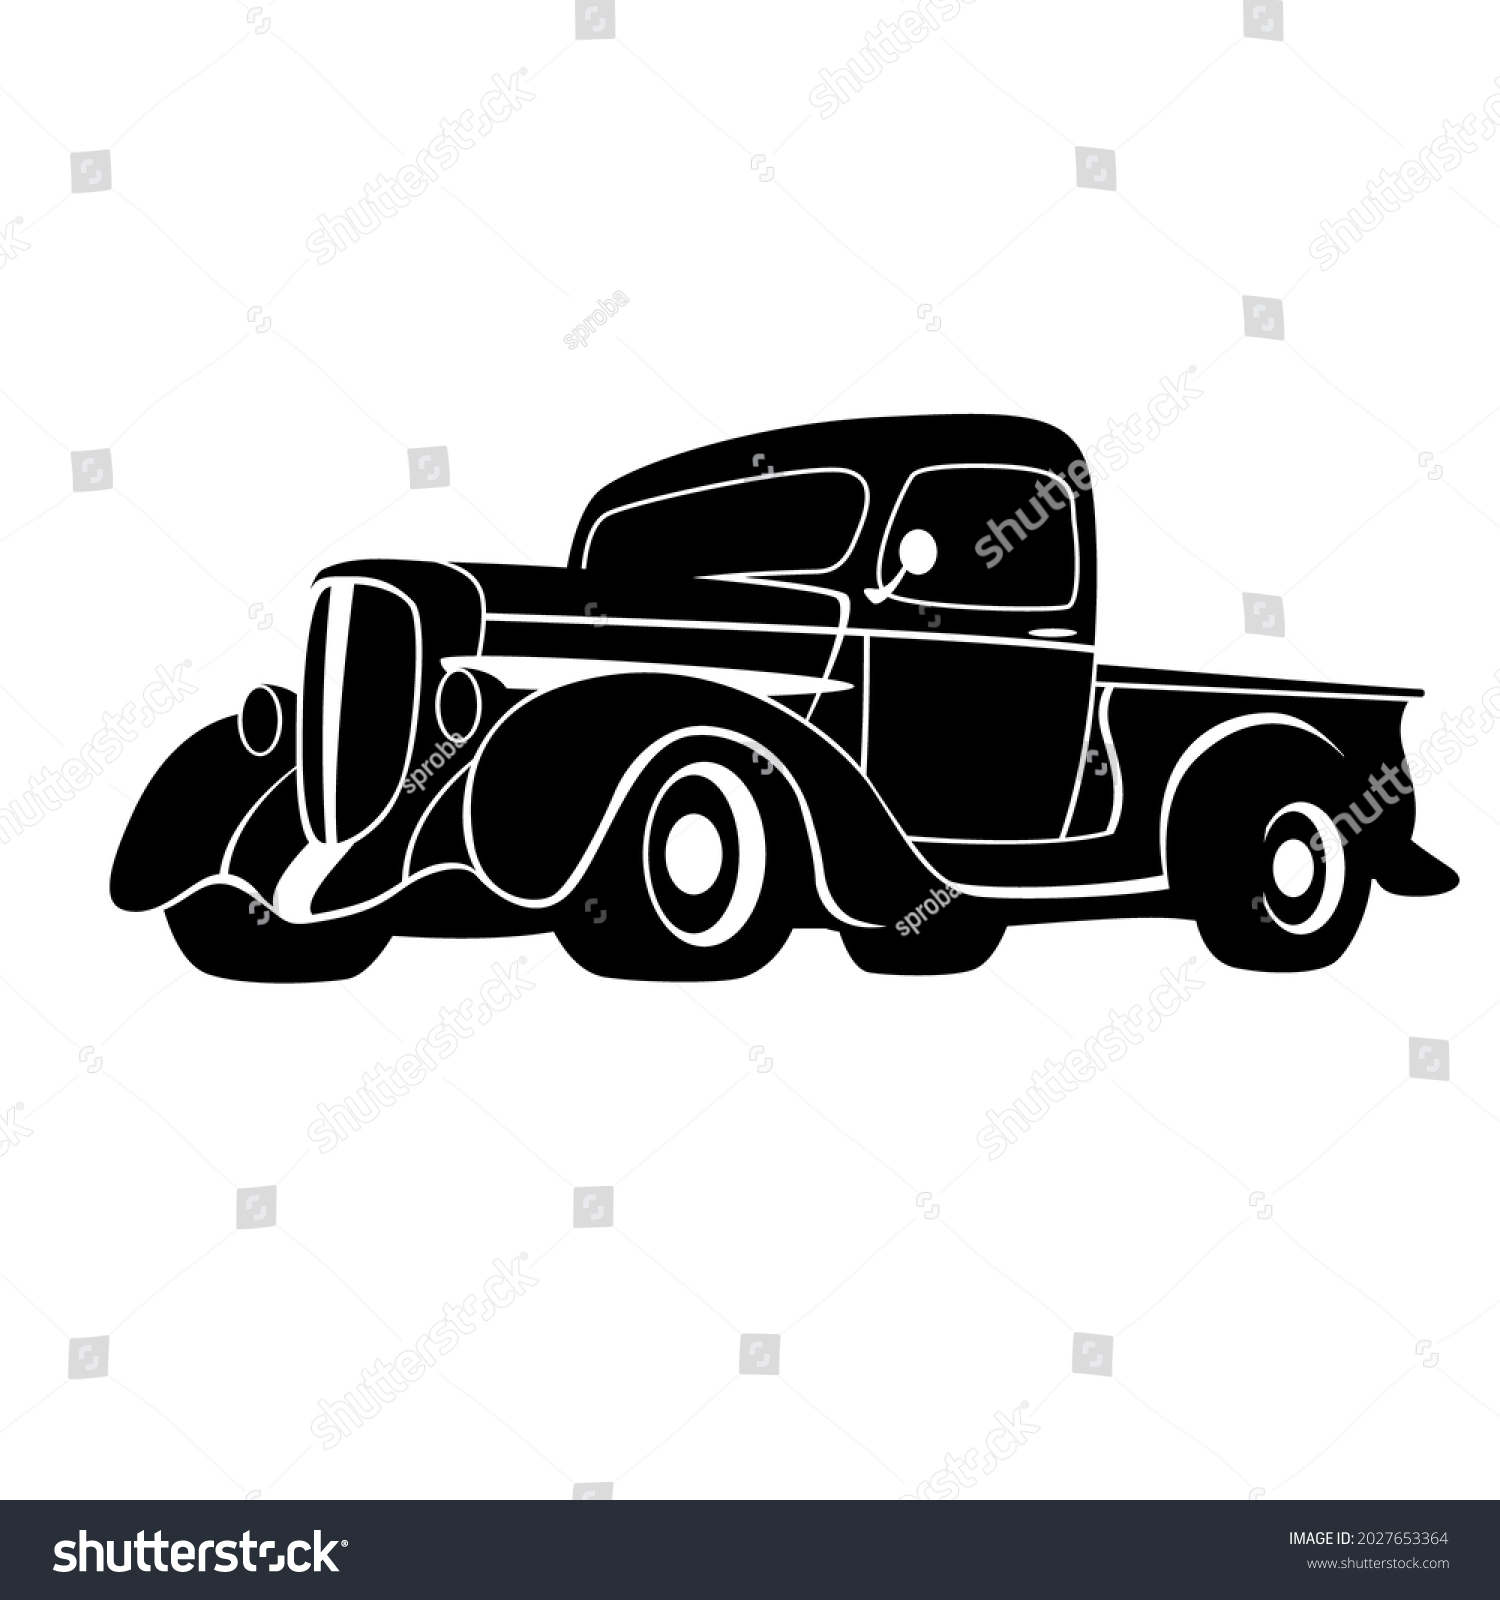 SVG of vintage pickup car,vector illustration, black silhouette svg